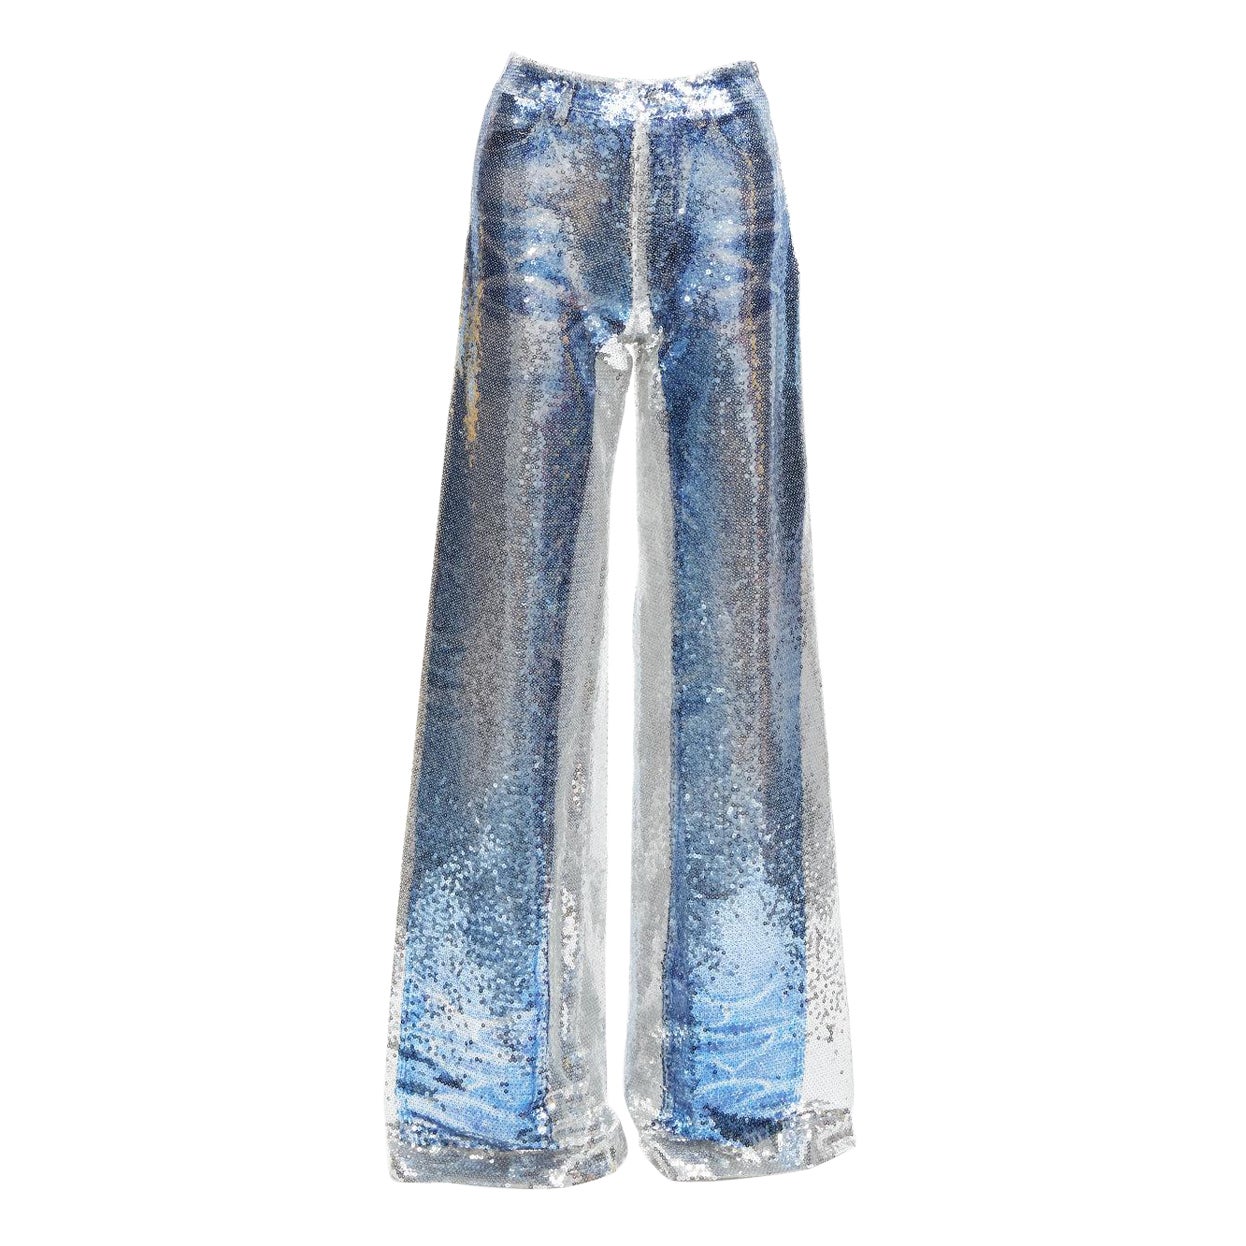 PONY STONE THAILAND silver tromp loeil jeans print sequins wide leg pants US2 S For Sale